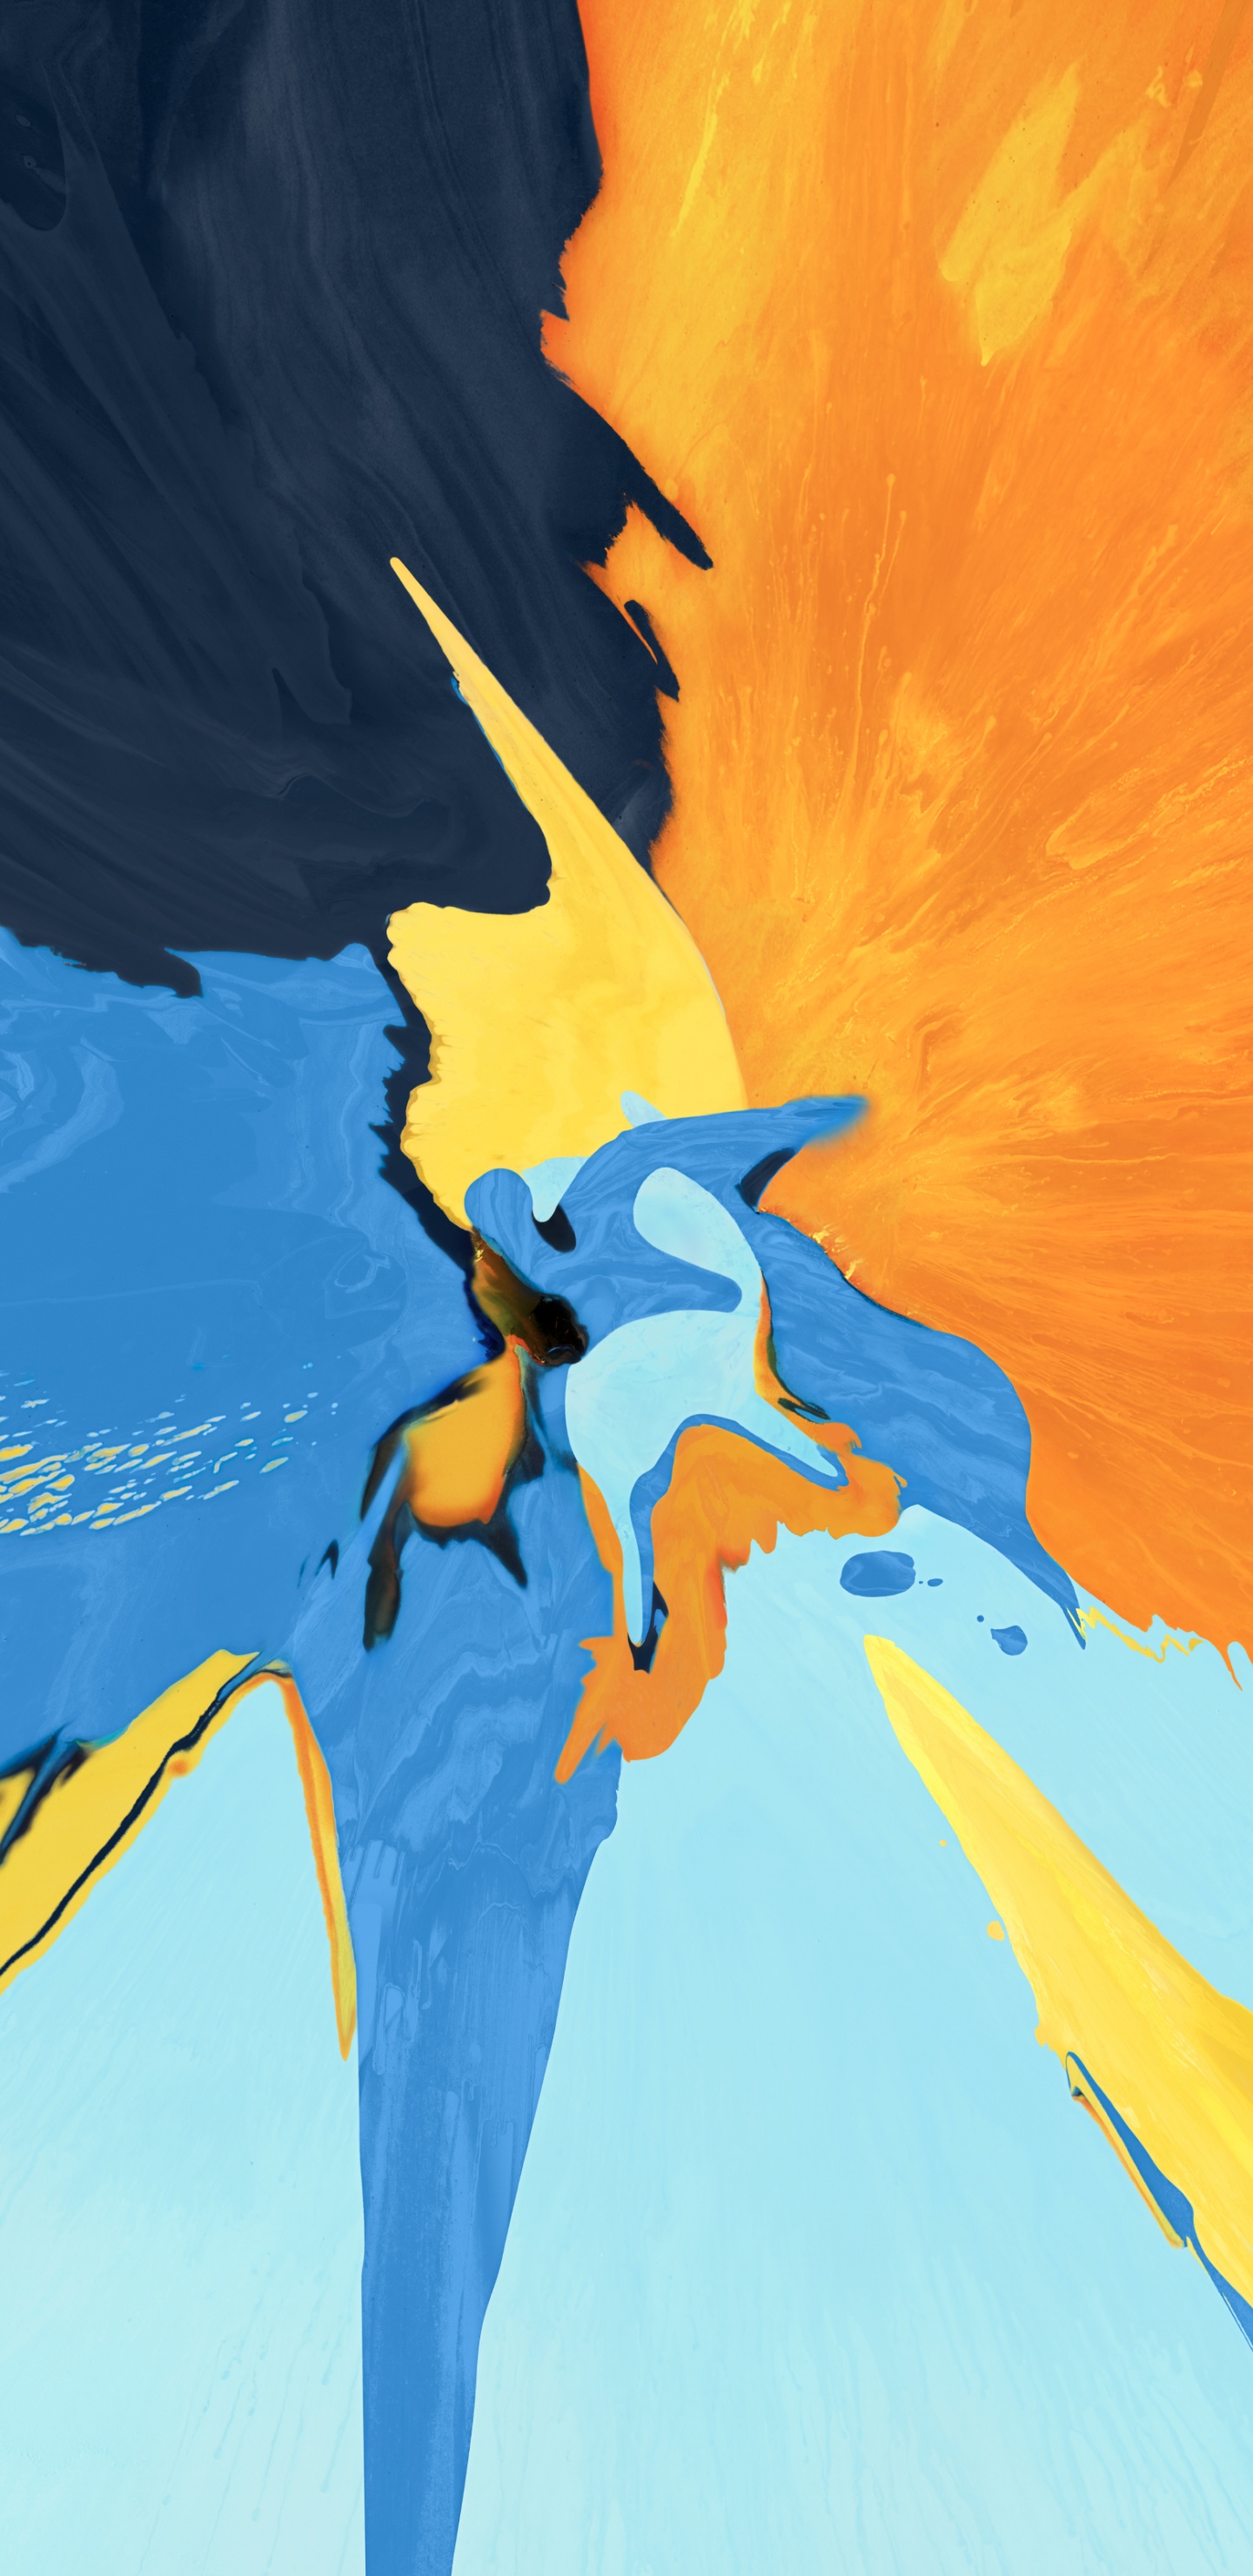 Pintura de Pájaro Azul Amarillo y Negro. Wallpaper in 1440x2960 Resolution